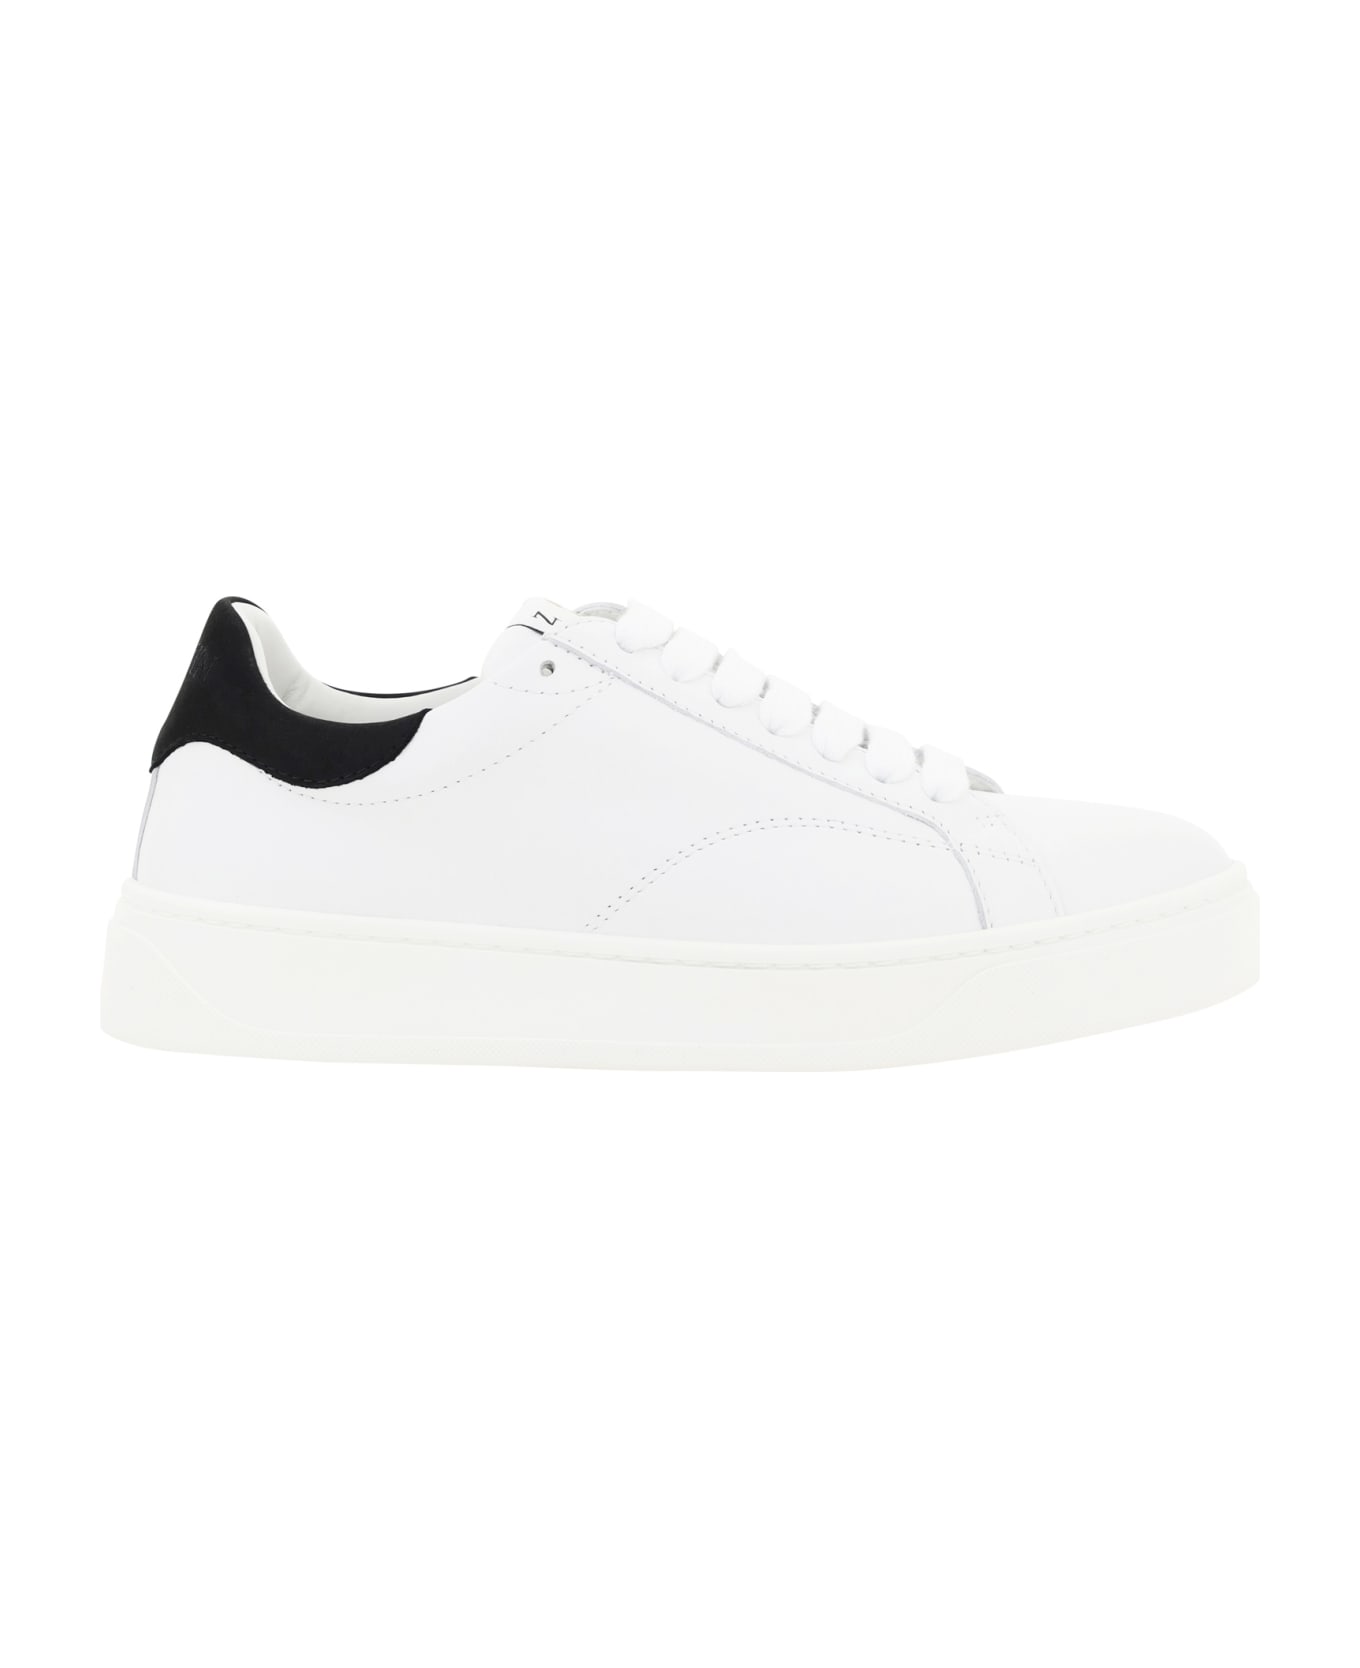 Lanvin Sneakers - White/black スニーカー